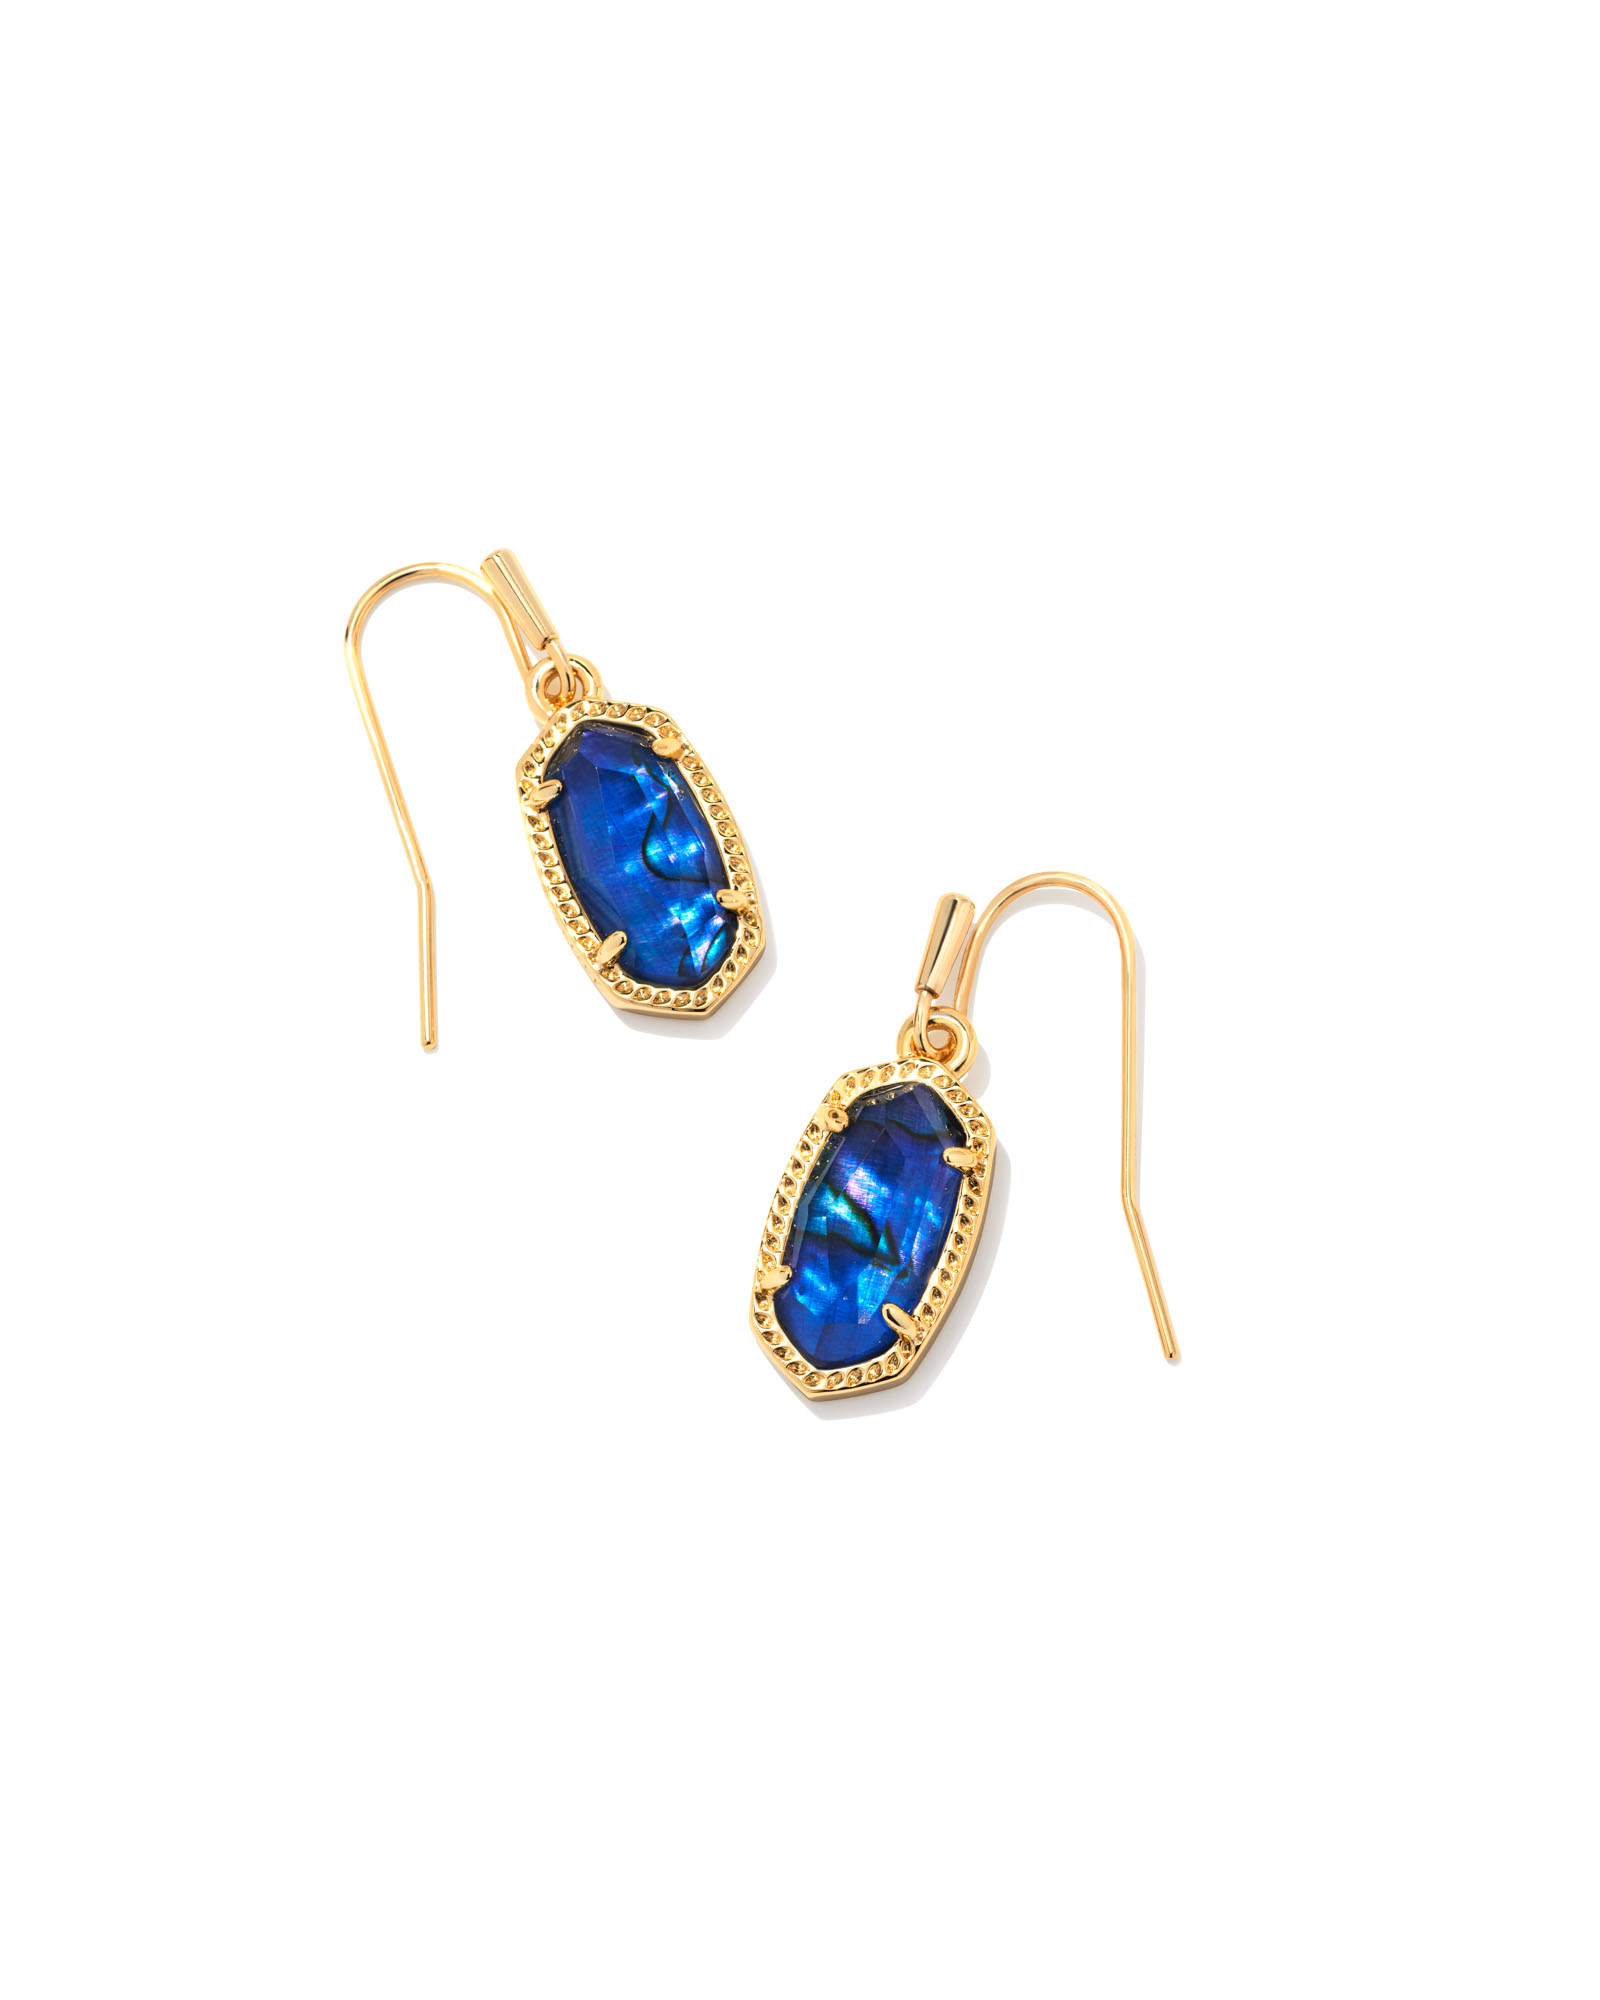 Lee Gold Drop Earrings in Navy Abalone | Kendra Scott